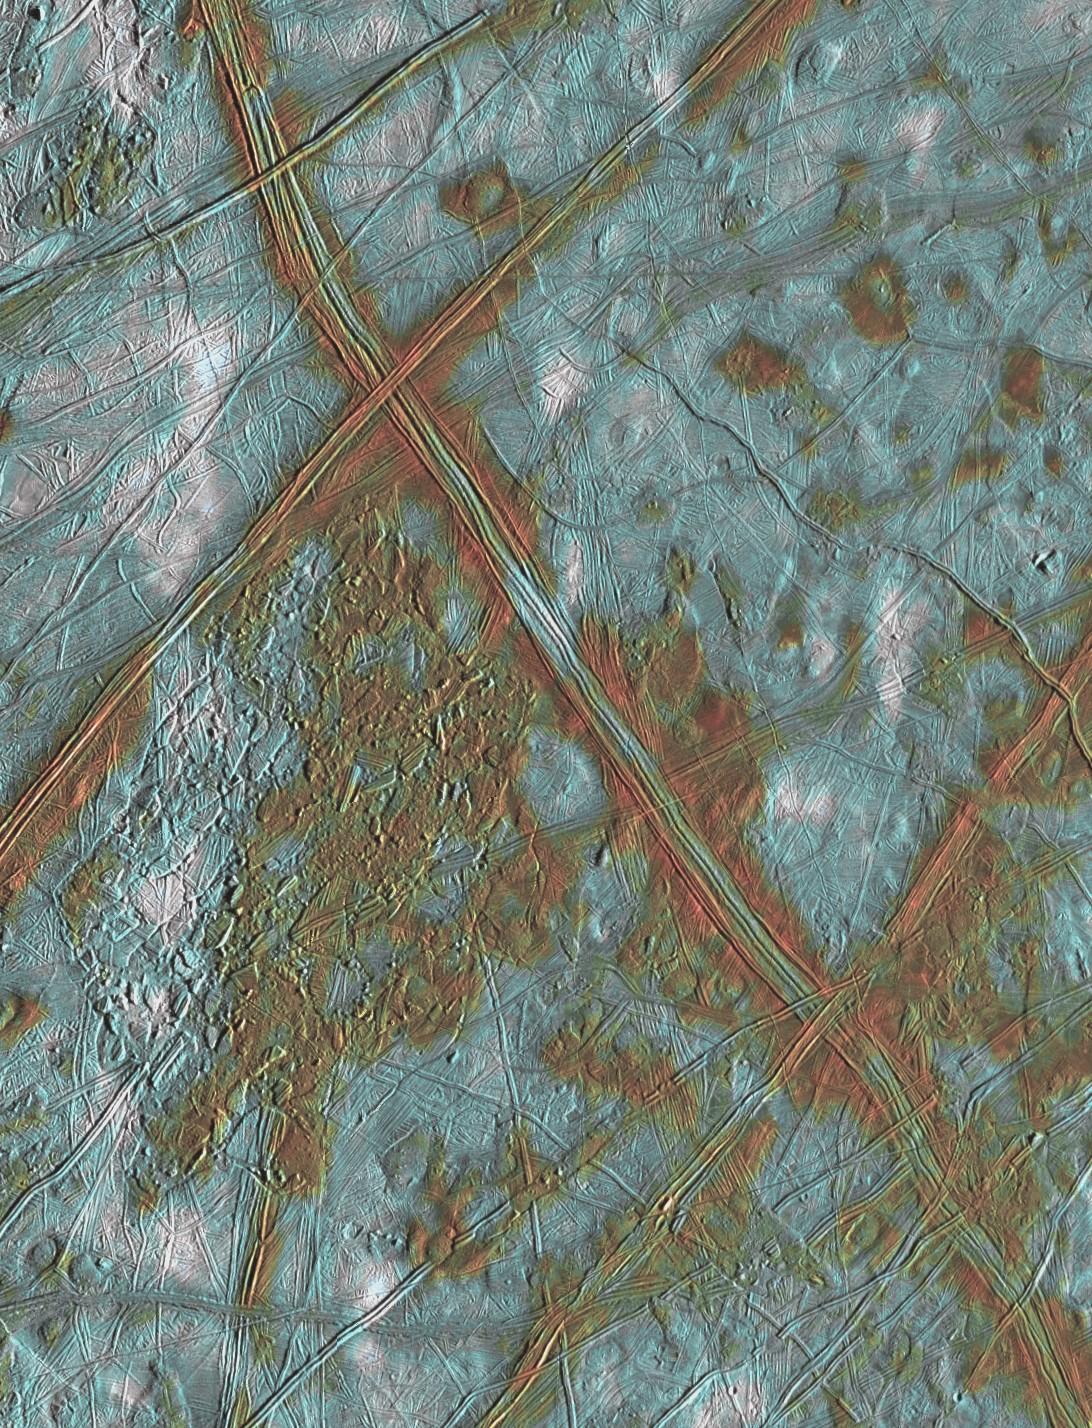 Europe et sa surface de dômes et de crêtes; un terrain perturbé comprenant des plaques crustales qui se sont brisées et repositionnées. Les zones rougeâtres sont associées à une activité géologique interne et le bleu à des plaines glacées relativement anciennes. [NASA - JPL/University of Arizona]